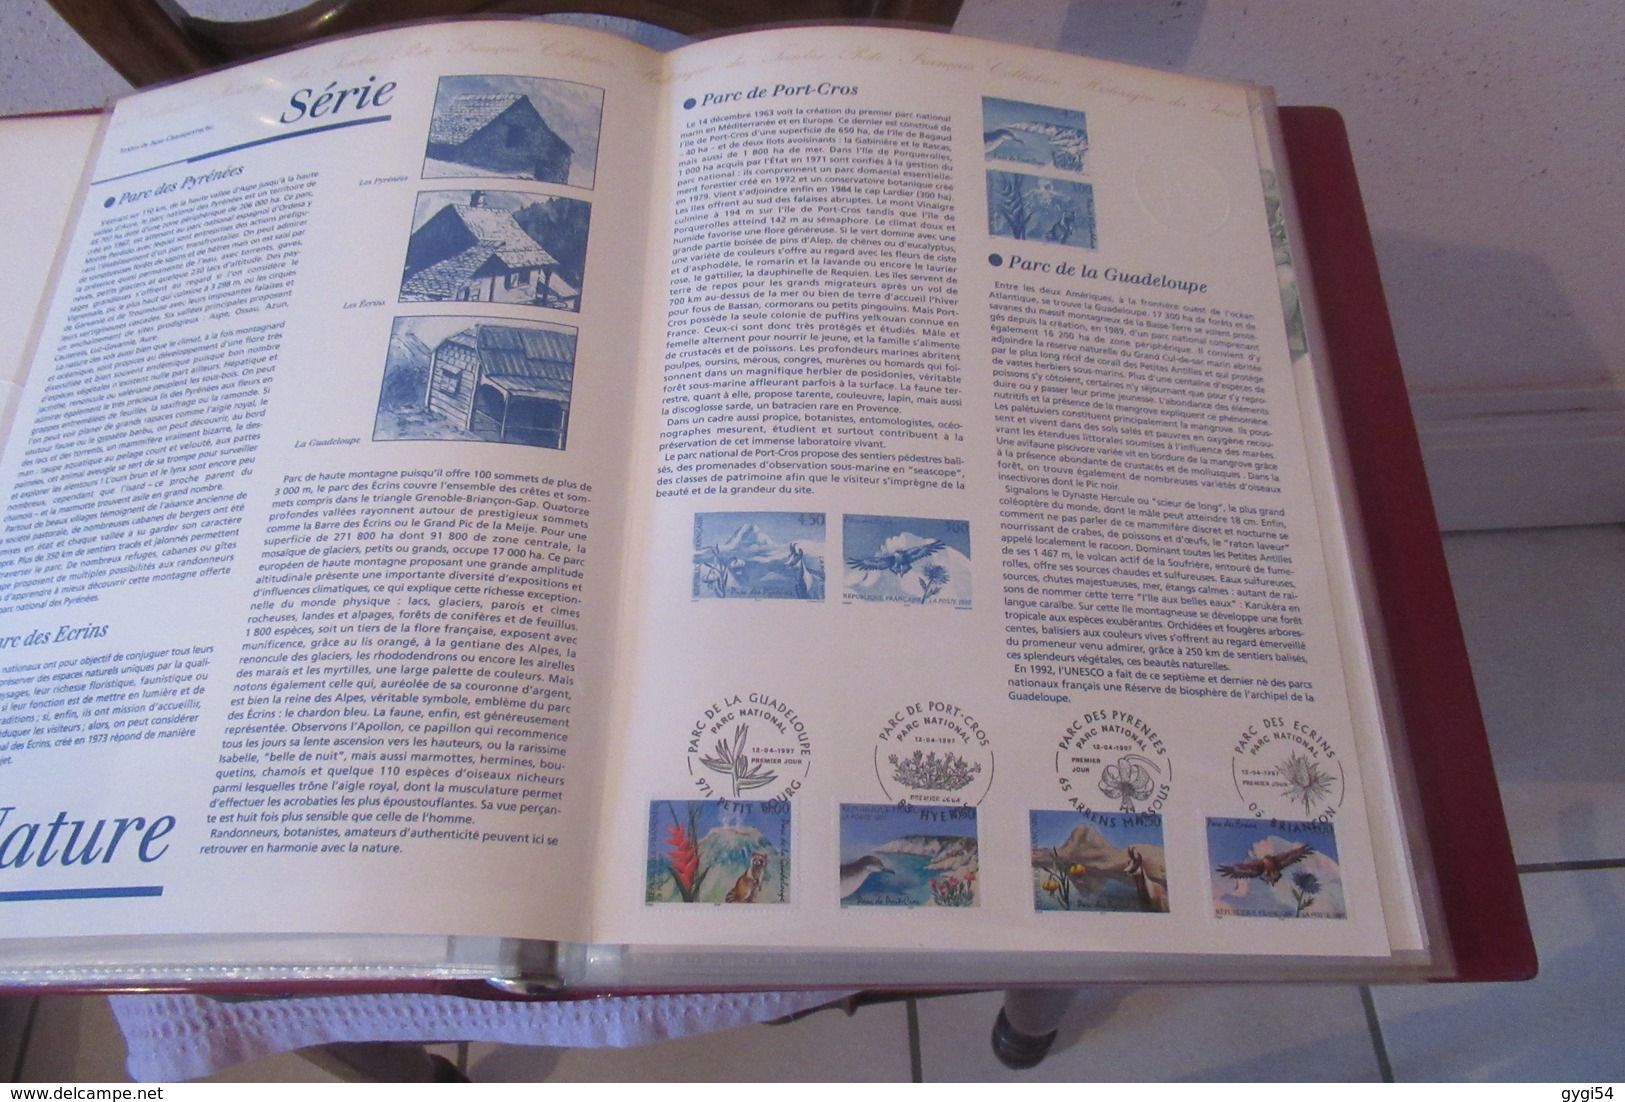 Documents officiels de la Poste  1997 année complète dont Carnets   50 Feuillets